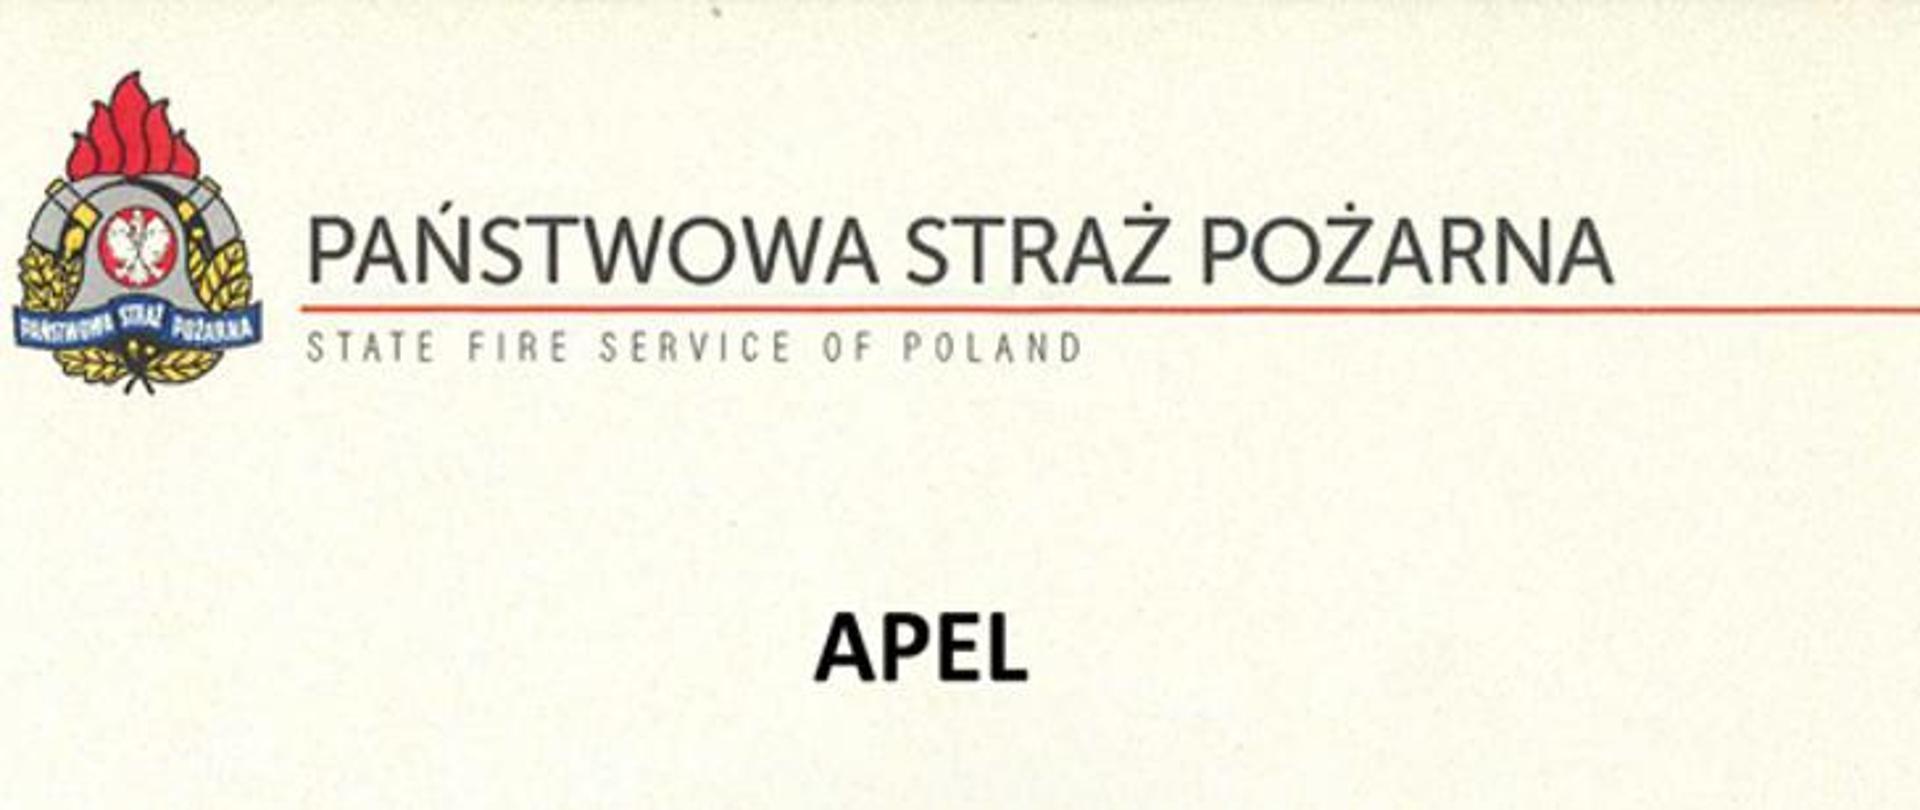 Apel baner z logo PSP